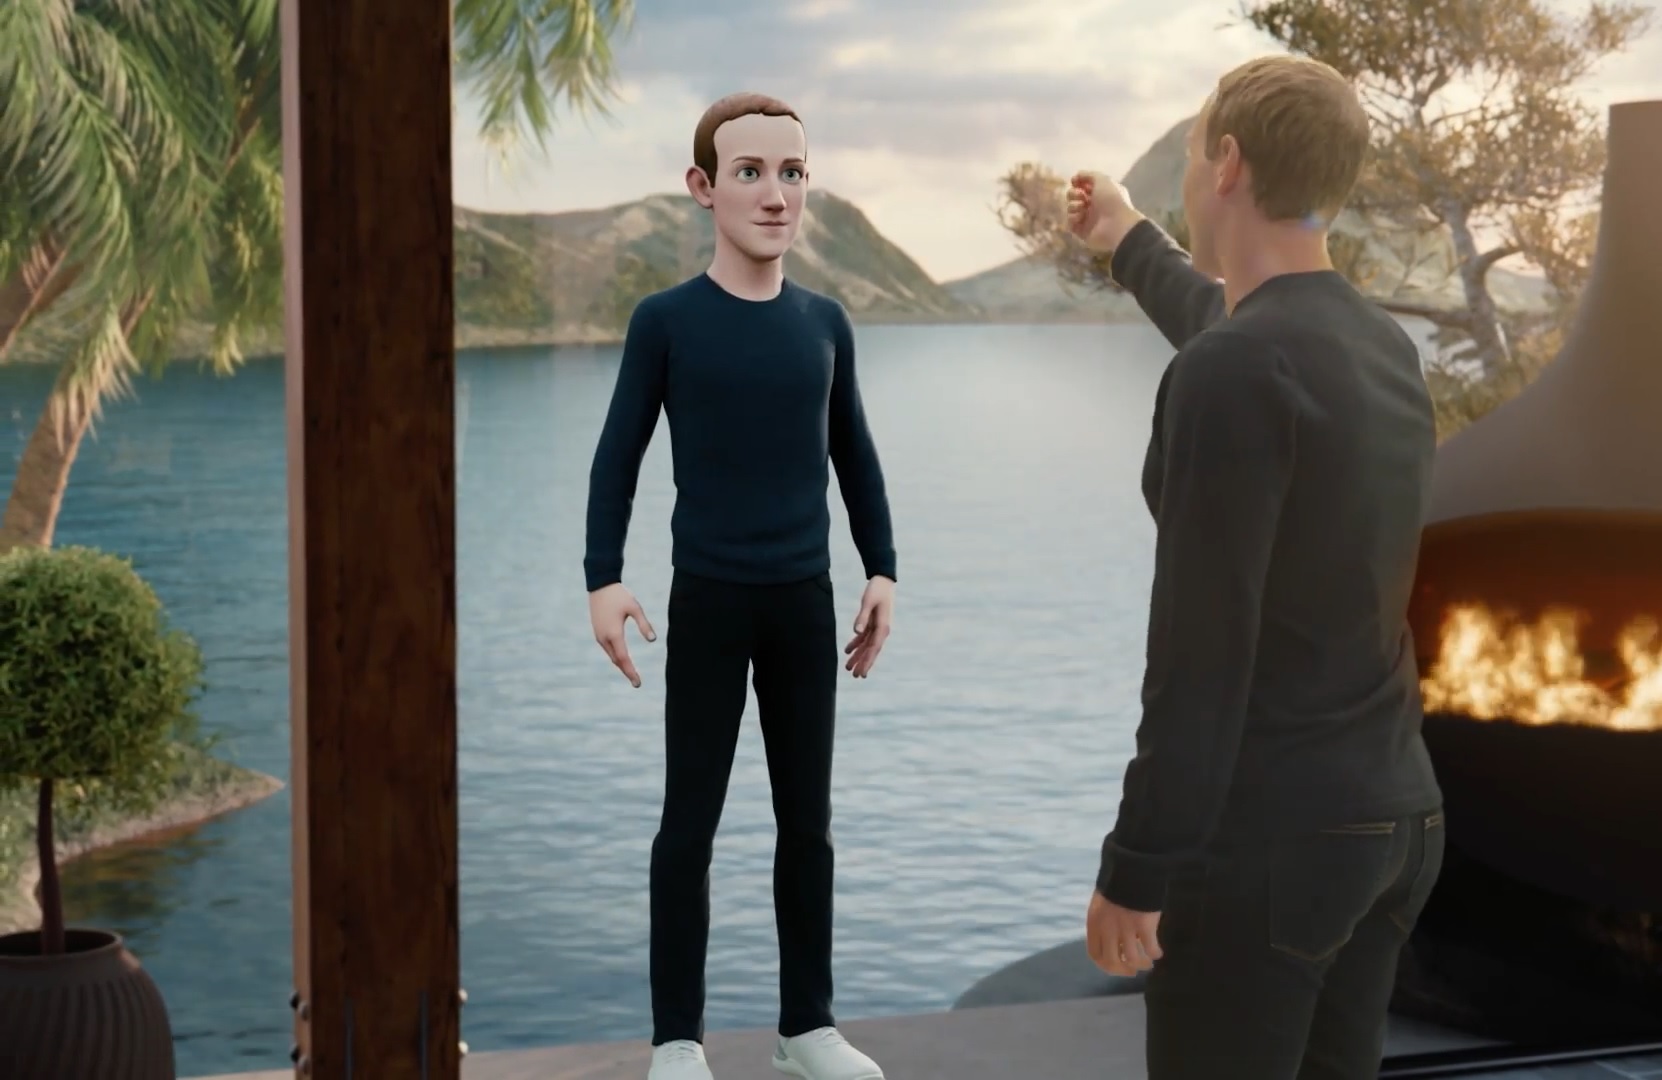 A virtuális világban, ahol bármilyen lehetsz, Mark Zuckerberg ugyanolyan ruhát választ, mint a valóságban